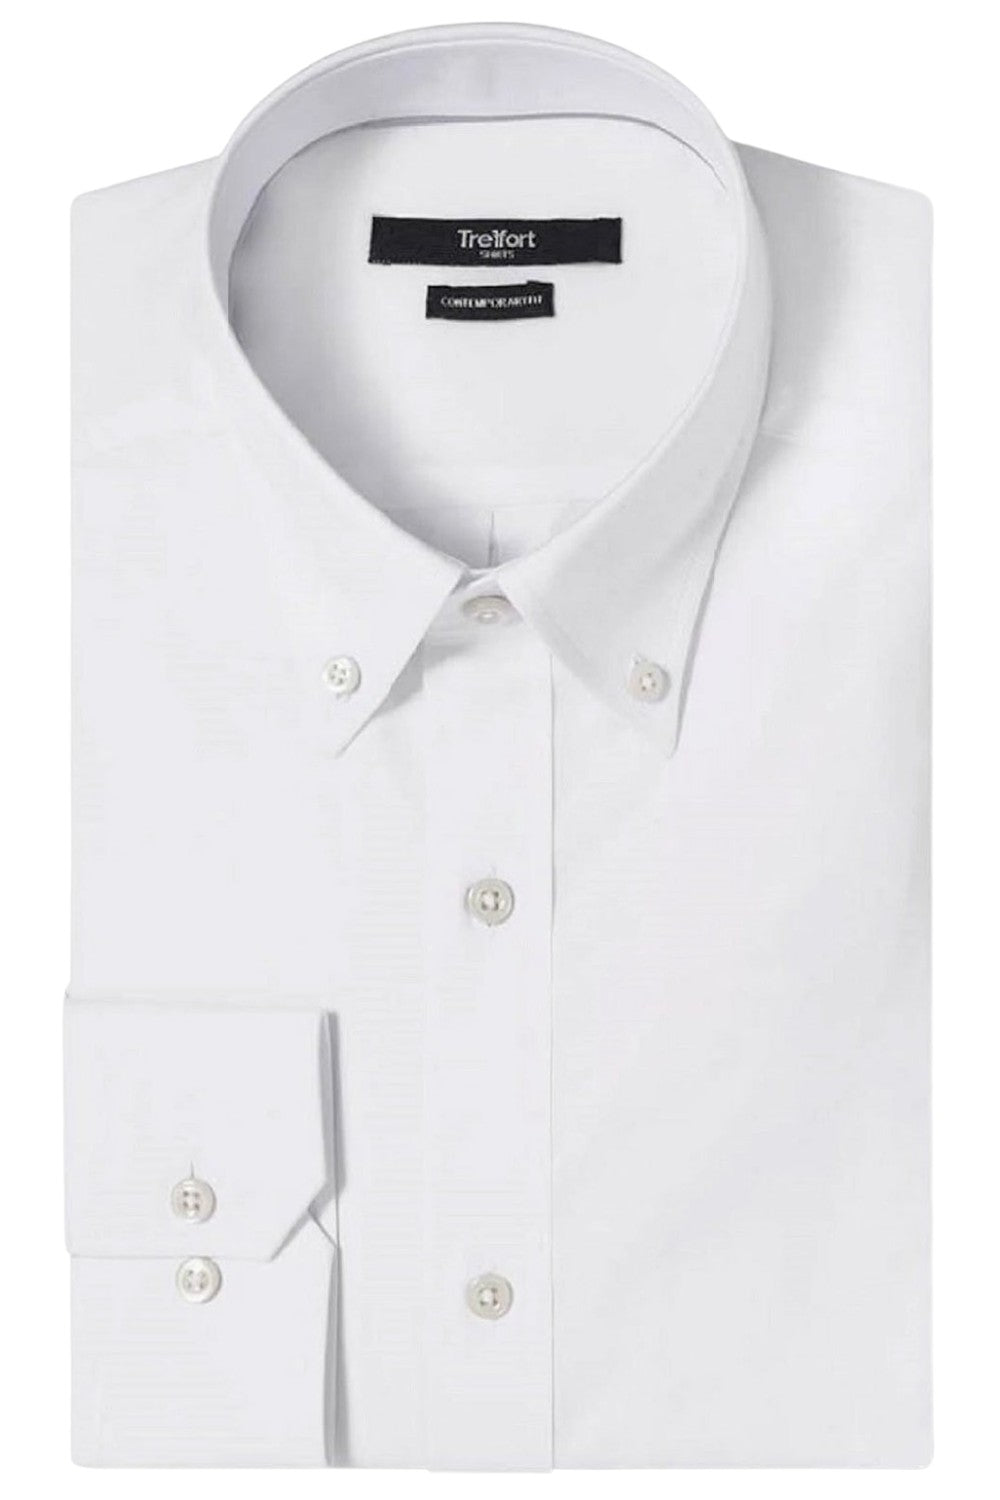 Classic Shirt - Luxury White